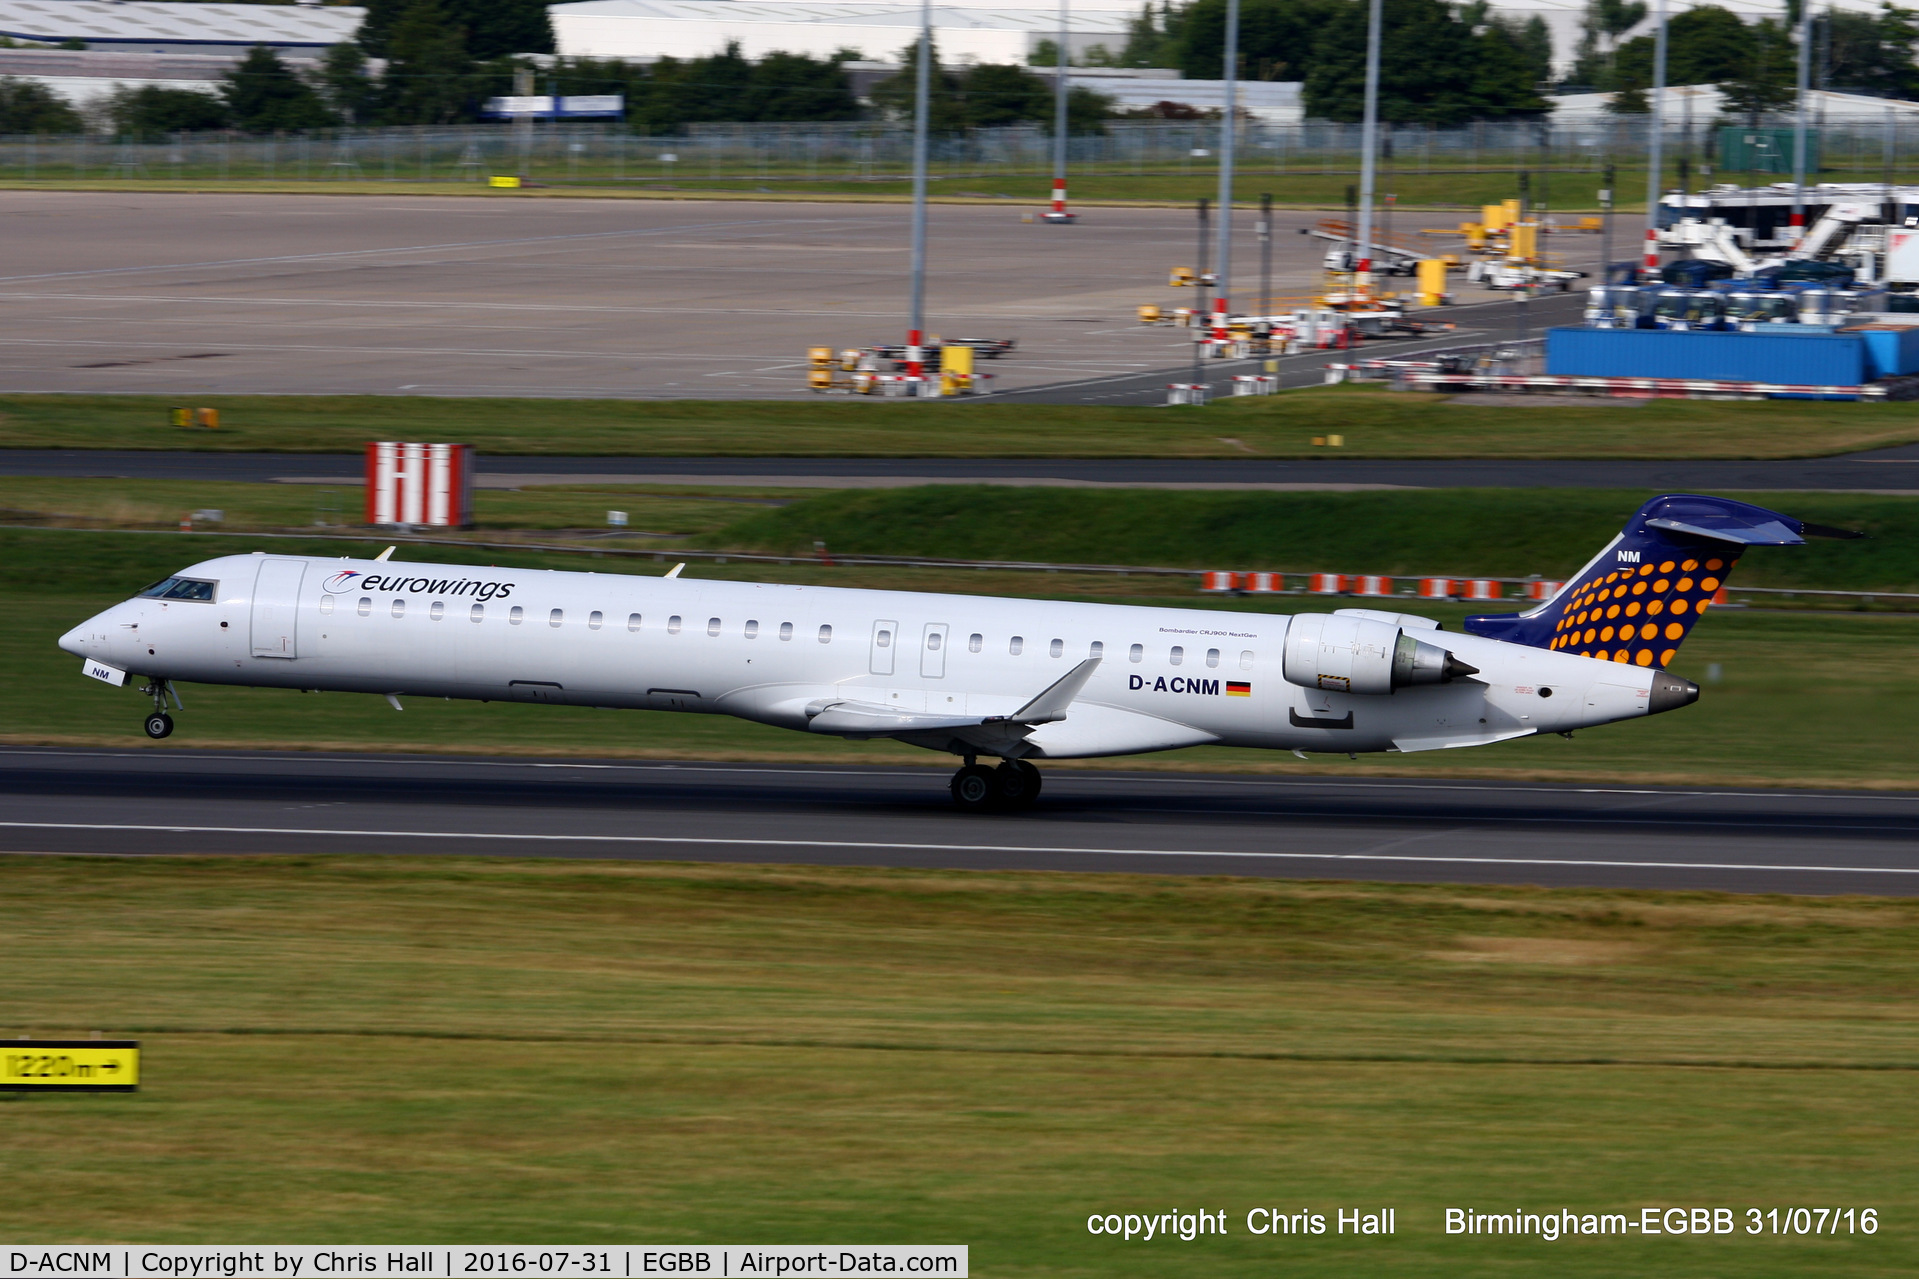 D-ACNM, 2010 Bombardier CRJ-900LR (CL-600-2D24) C/N 15253, Eurowings